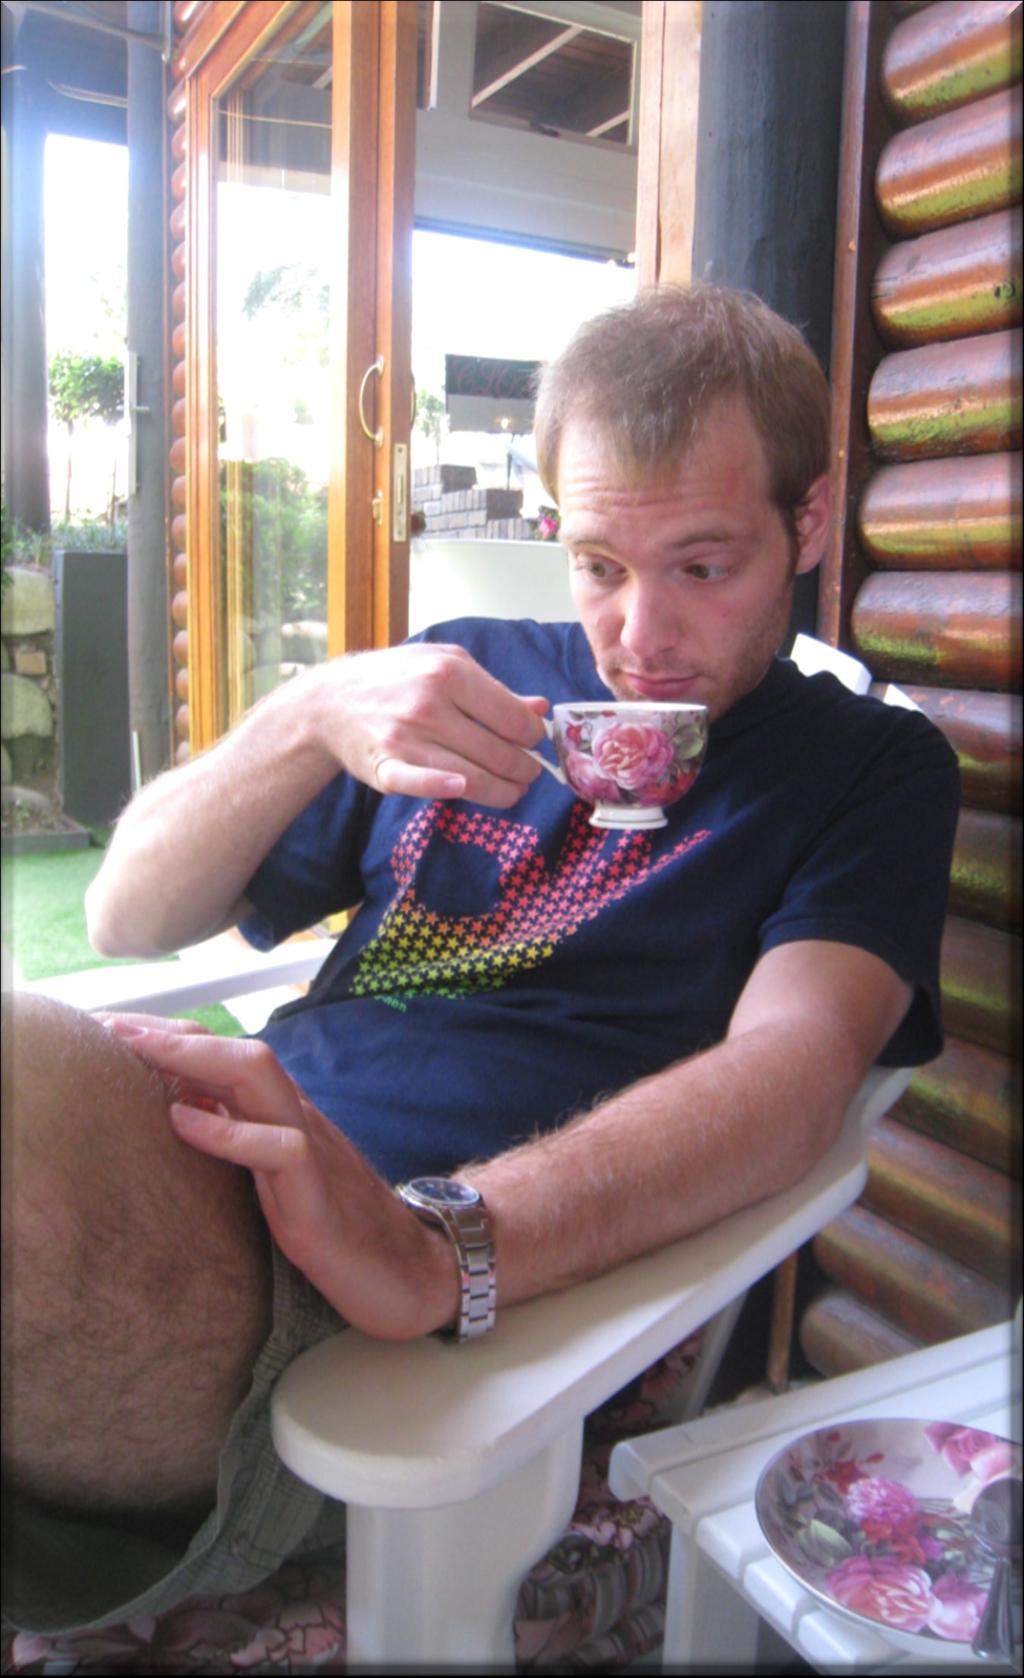 Entspannung bei einer Tasse Kaffee und - zu unserem Bedauern - auch bei einer Zigarette gehörte zu David.